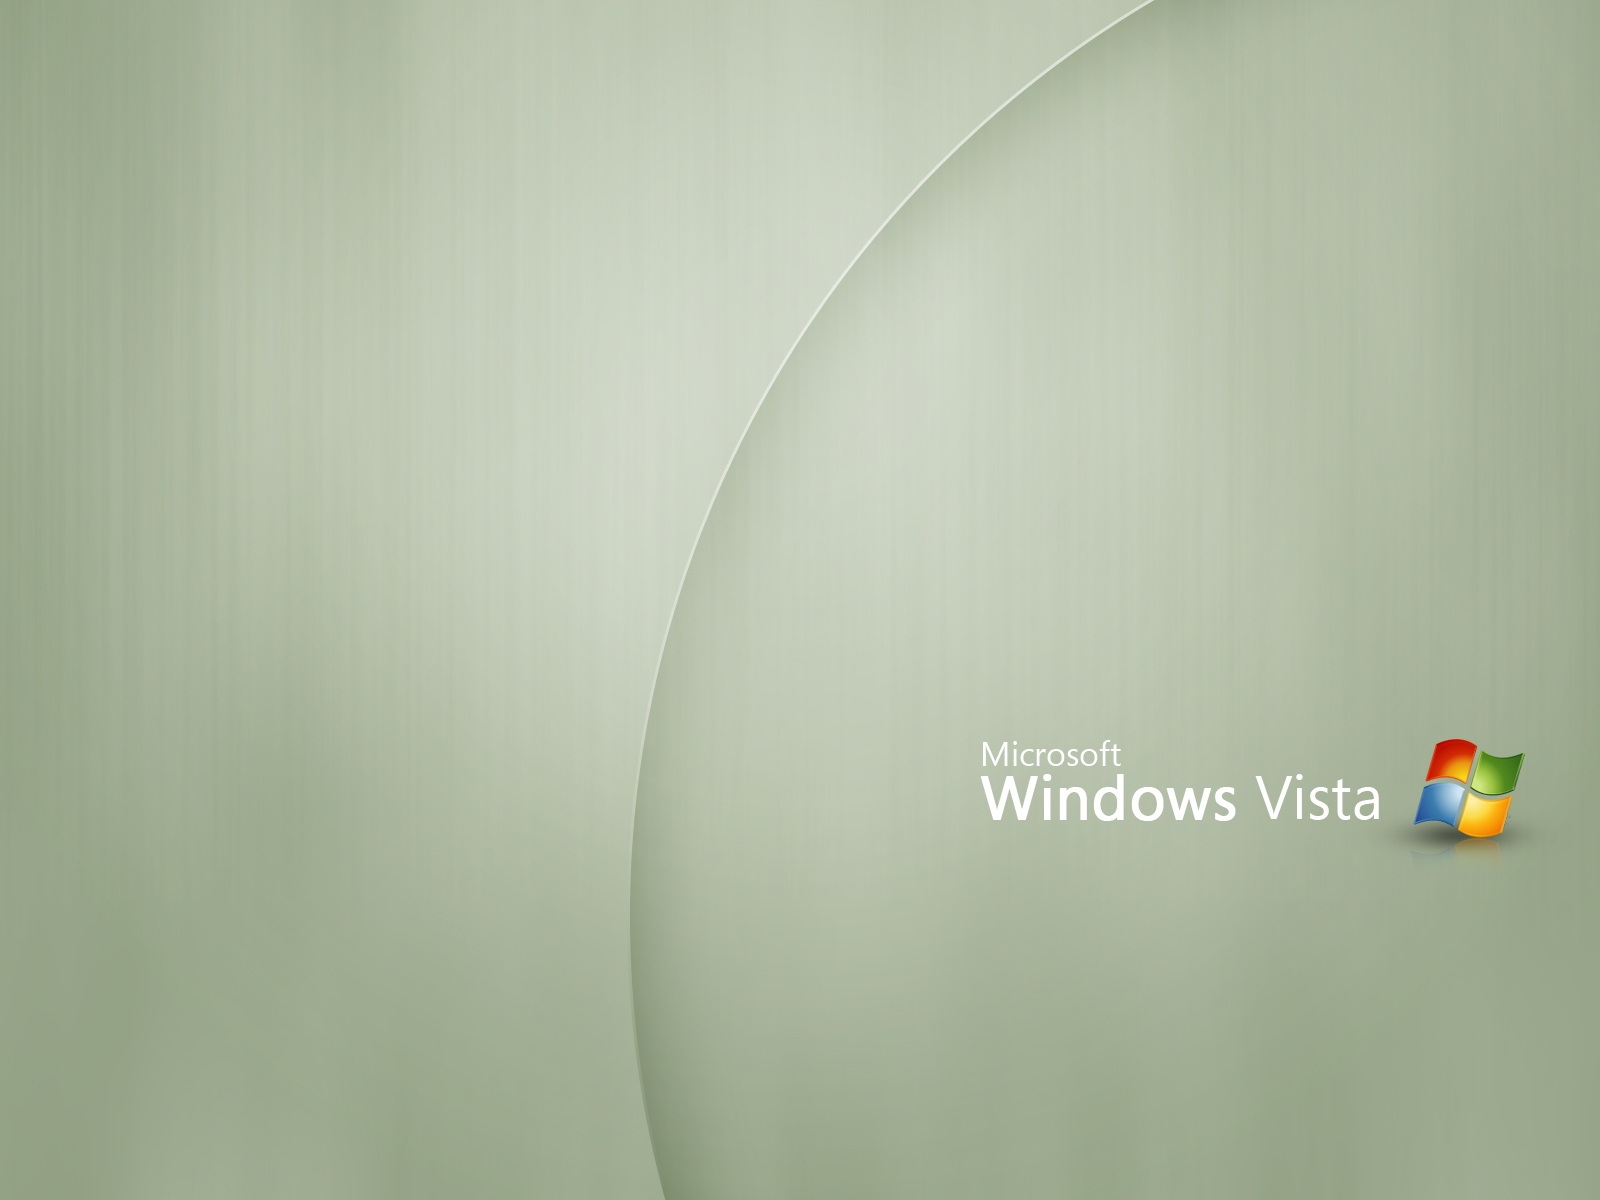 壁纸1600x1200Windows Vista壁纸 壁纸20壁纸 Windows Vista壁纸壁纸 Windows Vista壁纸图片 Windows Vista壁纸素材 系统壁纸 系统图库 系统图片素材桌面壁纸